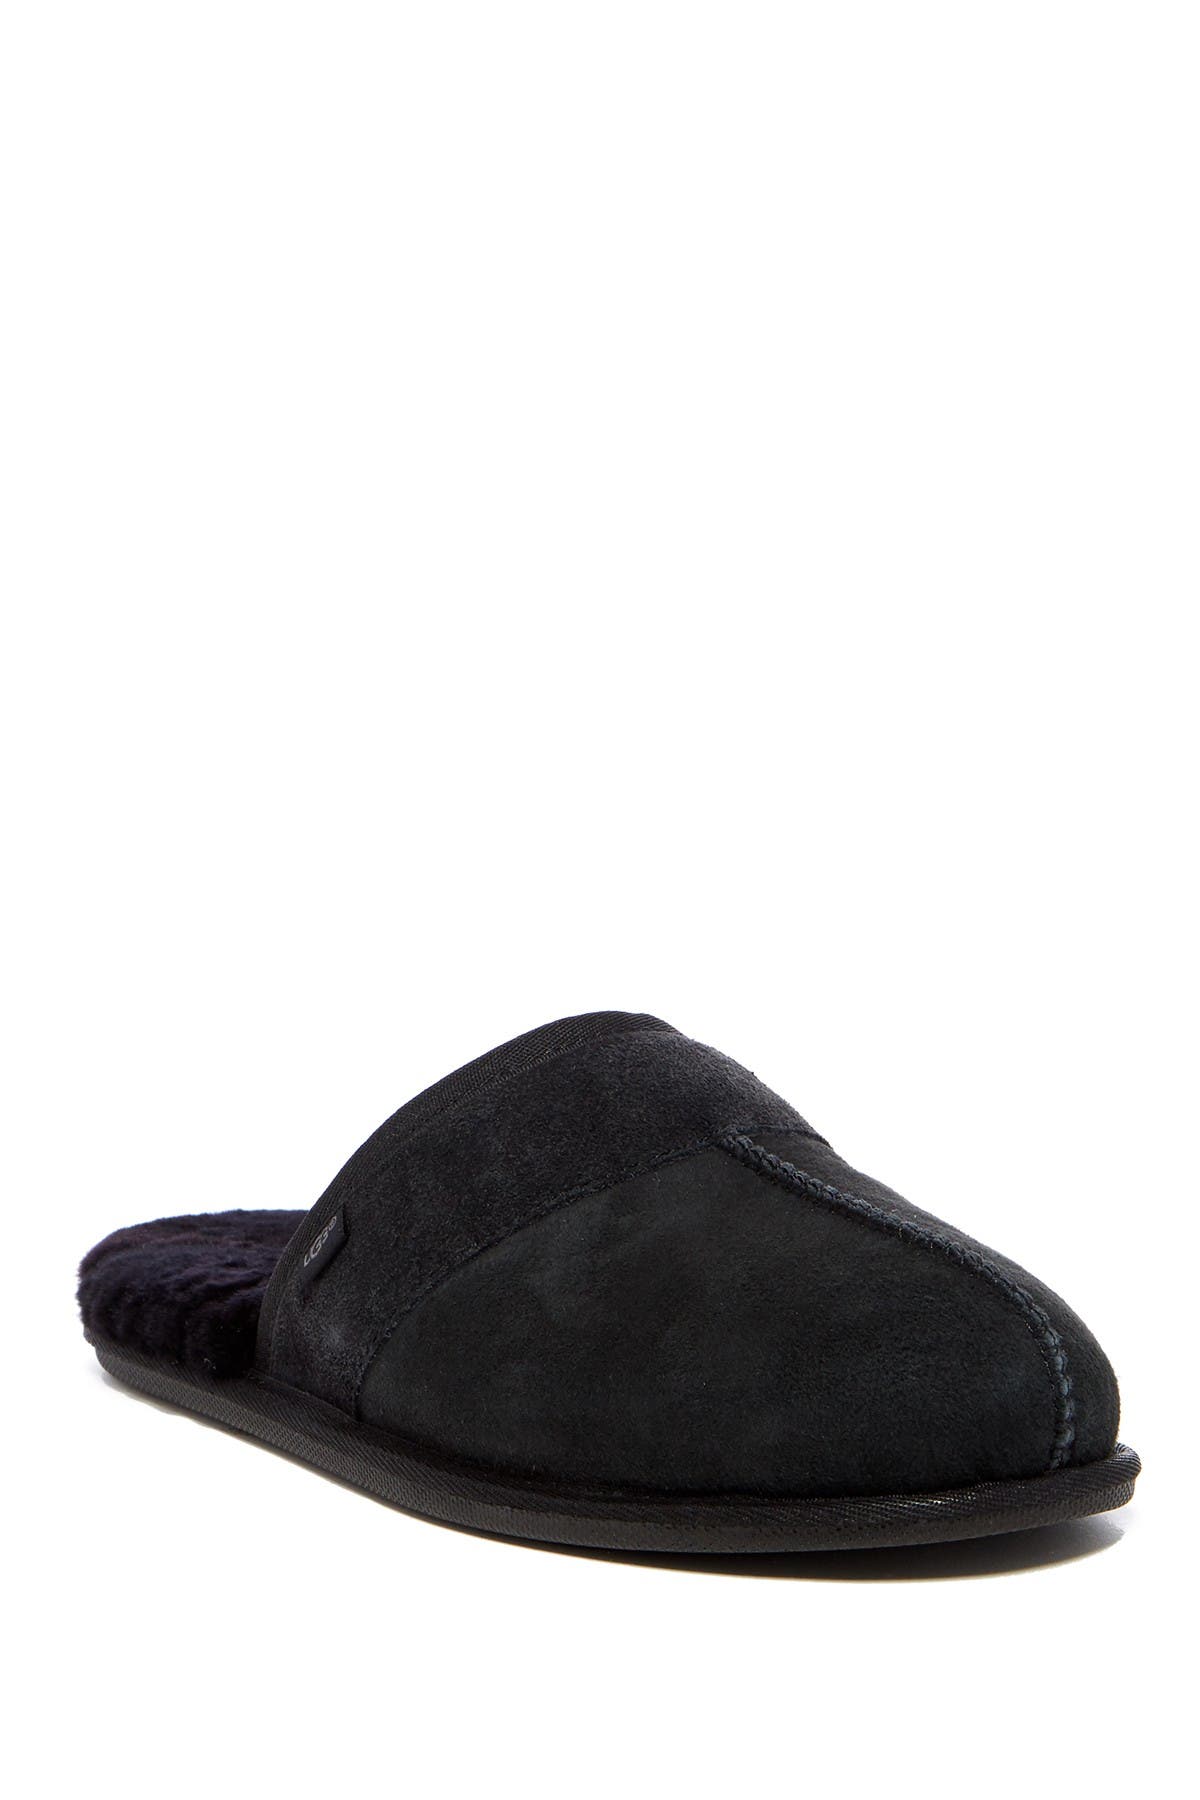 ugg slippers men black